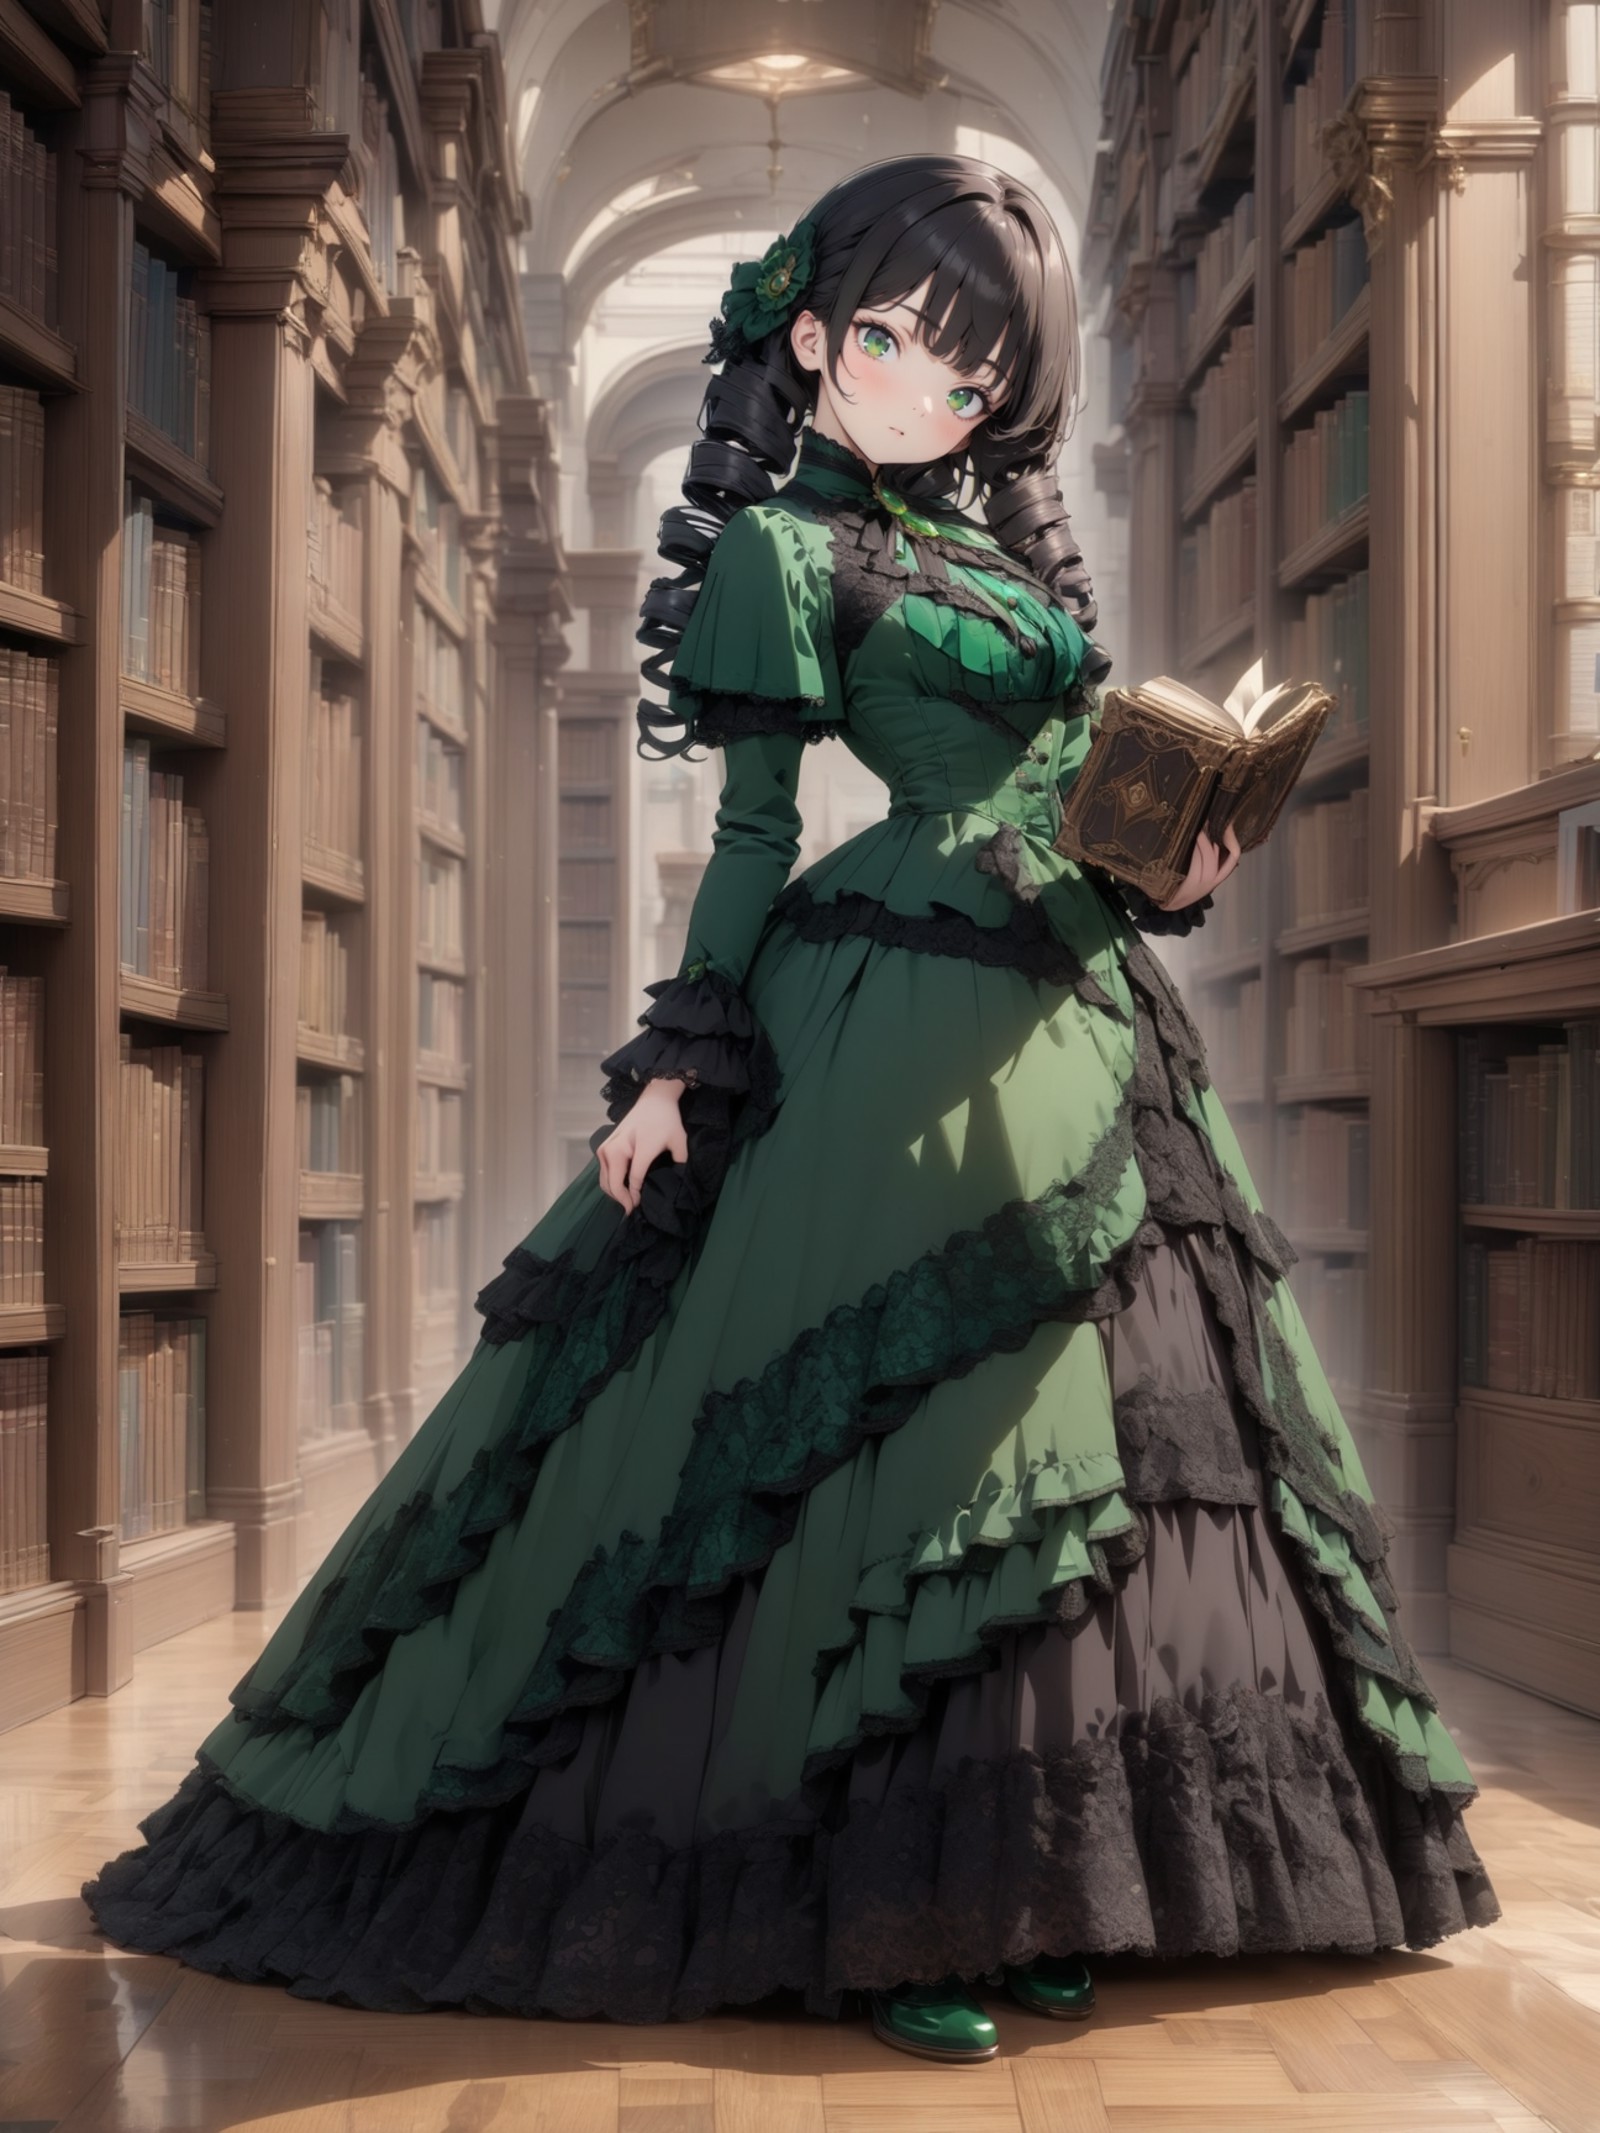 8k, masterpiece, highly detailed,
1girl wearing an emerald green (victorian dress), <lora:victorian_dress-XL-2.0:1>
black ...